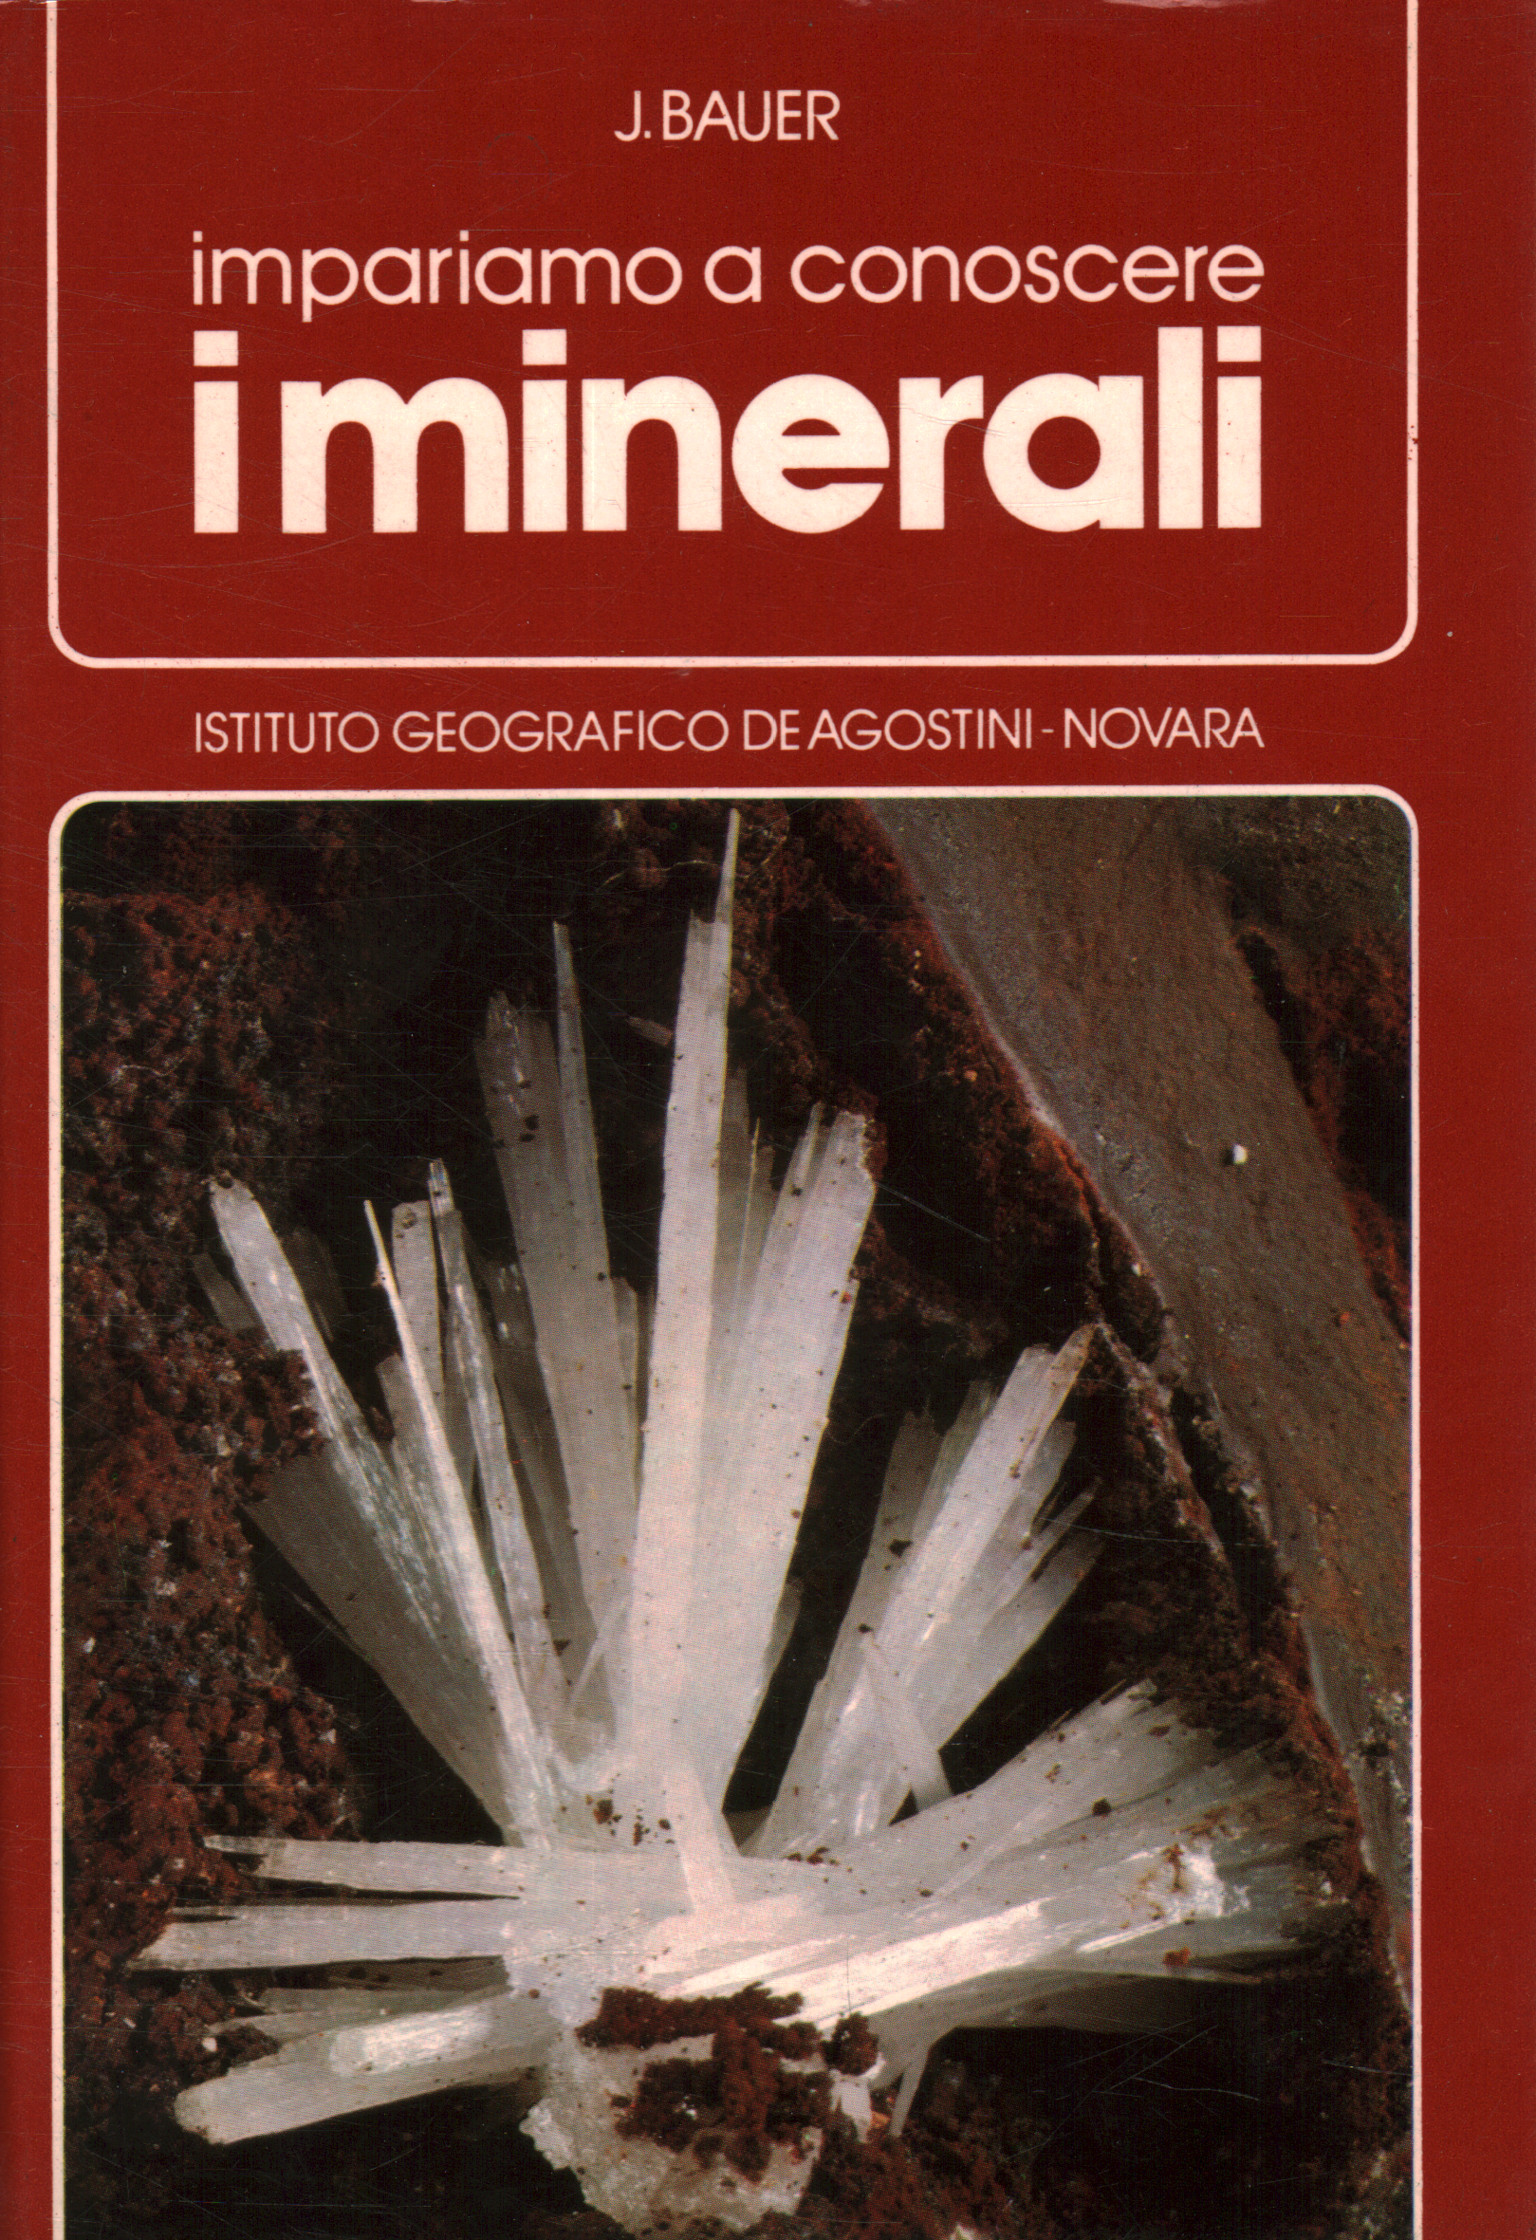 Lernen wir etwas über Mineralien